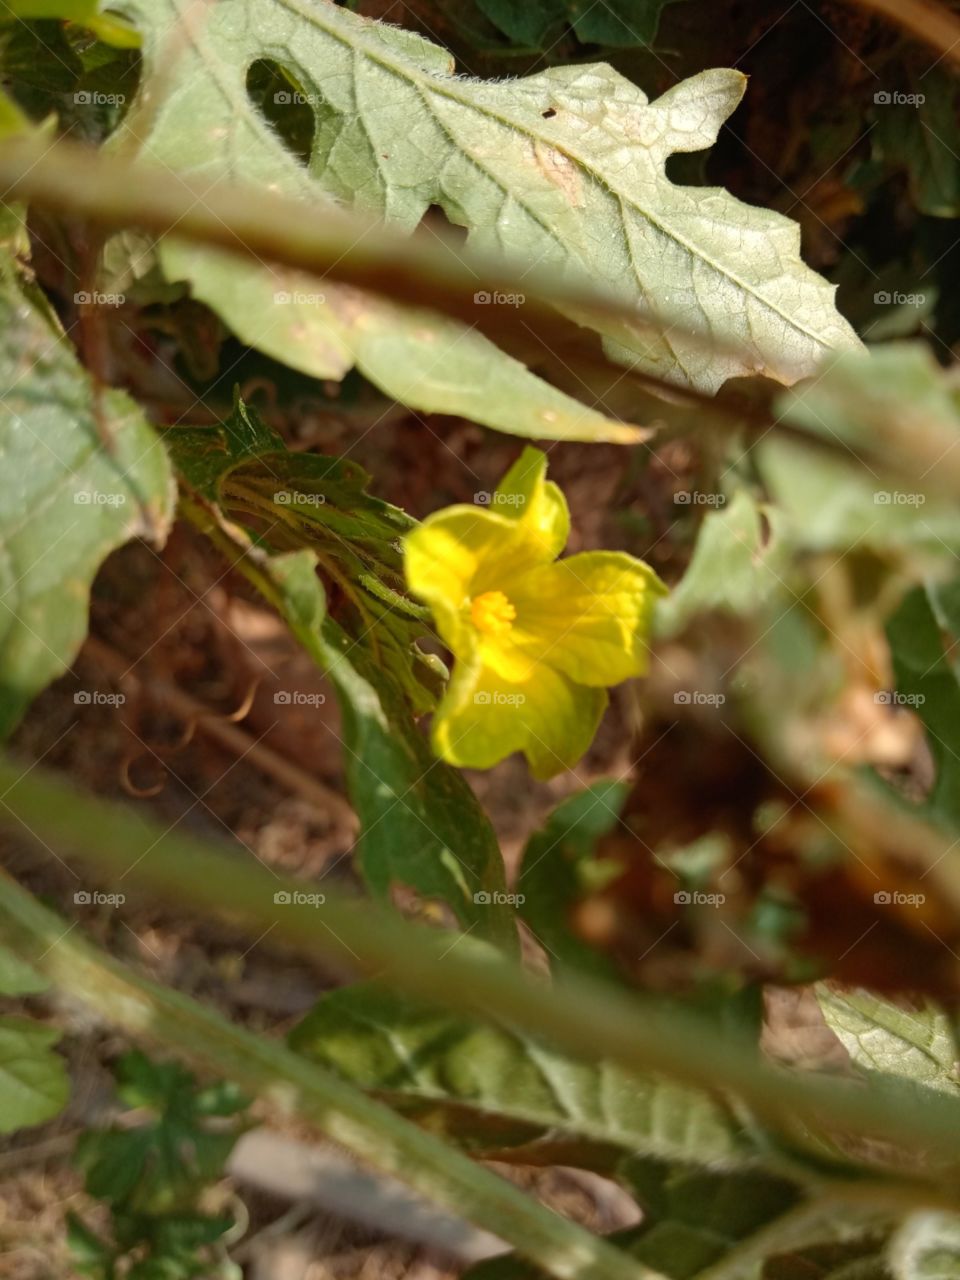 Little Yellow flower
Bitter gourd's flower